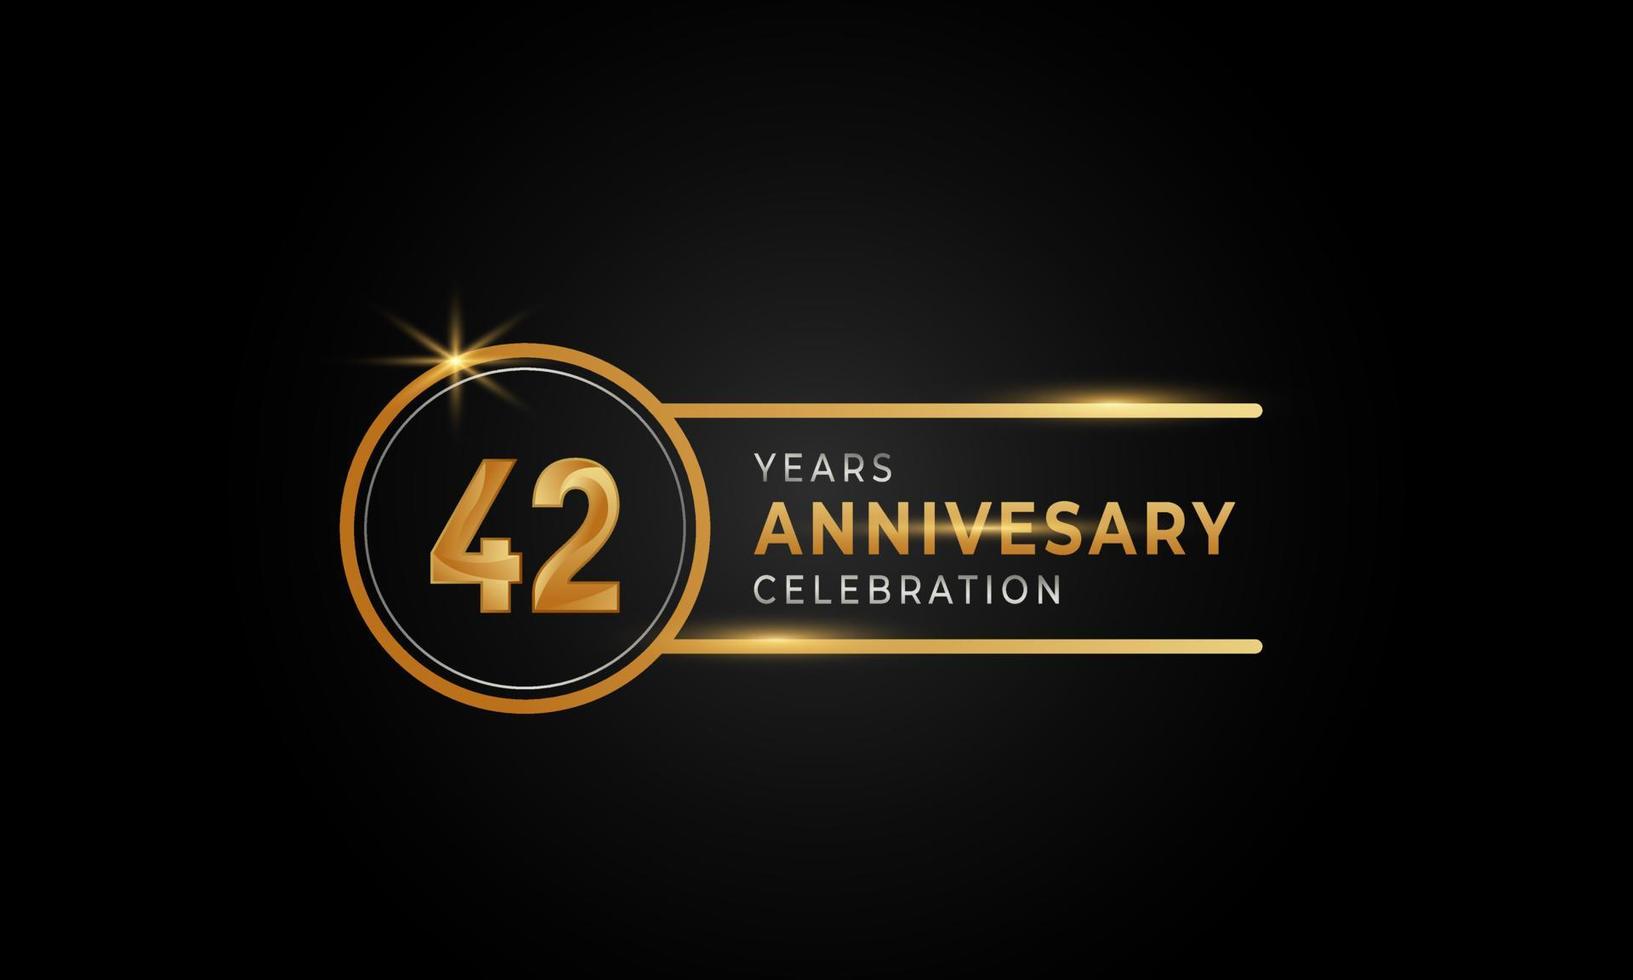 Celebración del aniversario de 42 años color dorado y plateado con anillo circular para evento de celebración, boda, tarjeta de felicitación e invitación aislada en fondo negro vector